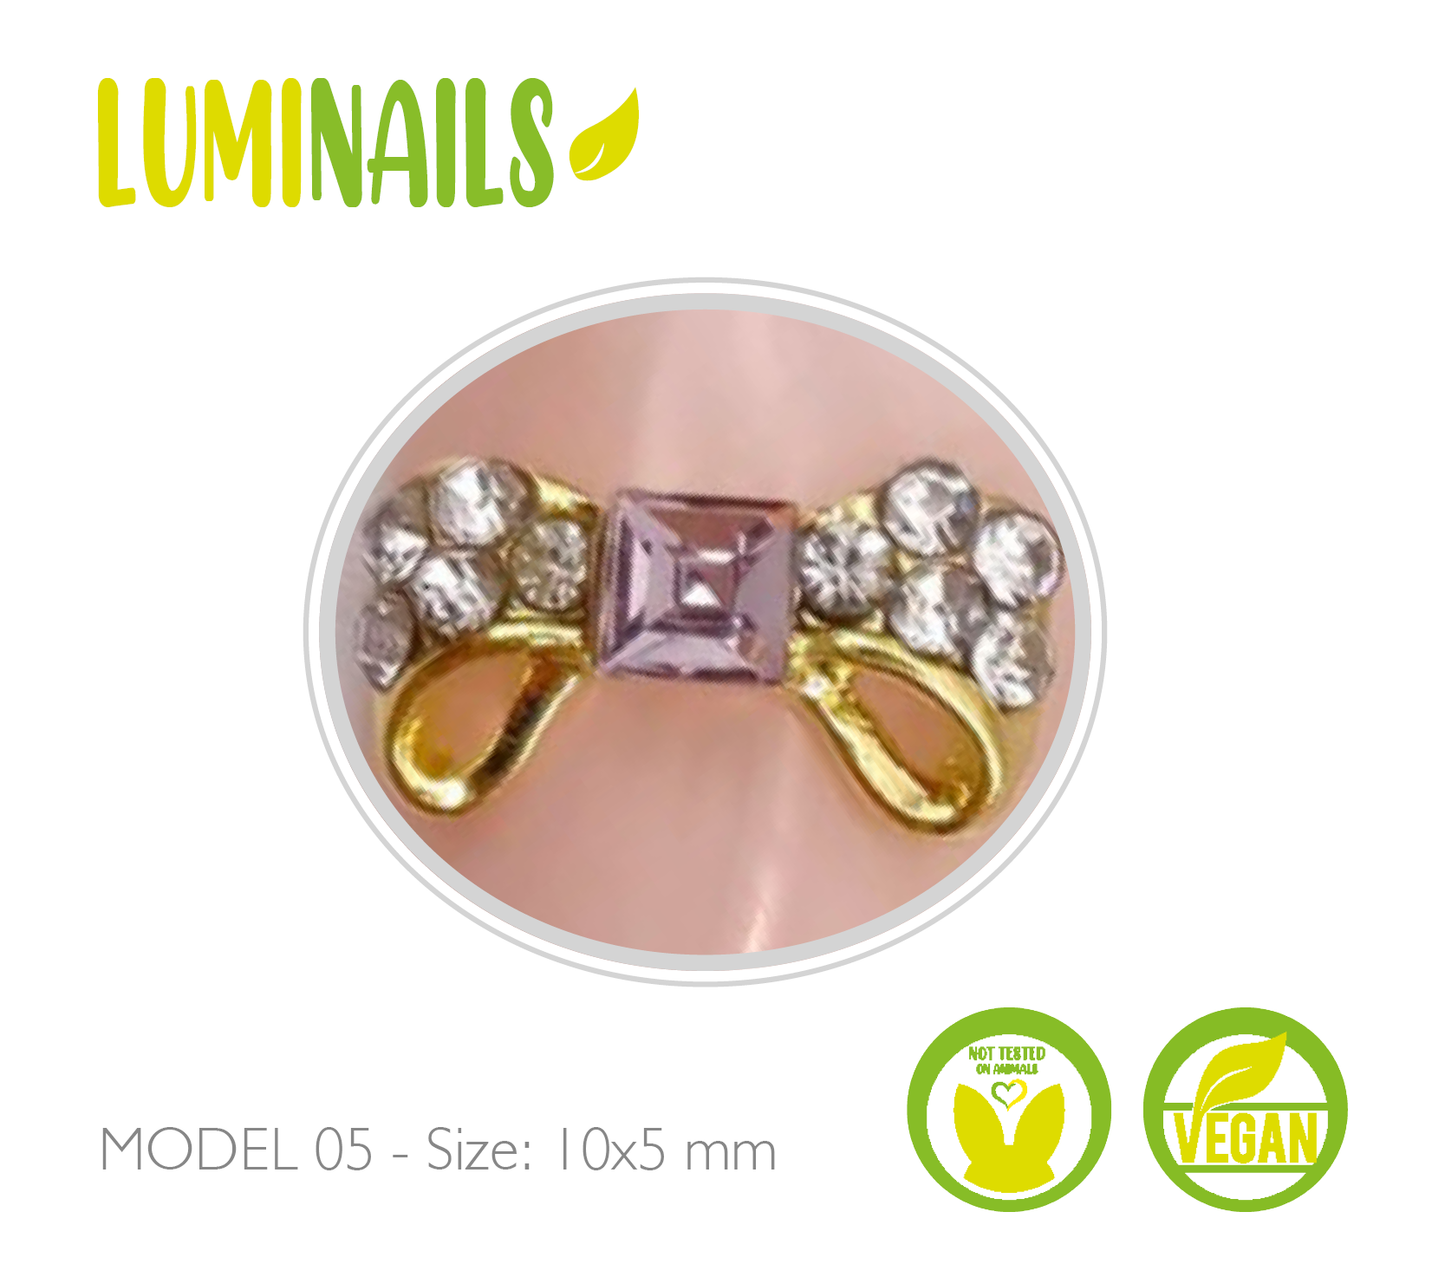 5D Nail Art Jewels (20 varianti)